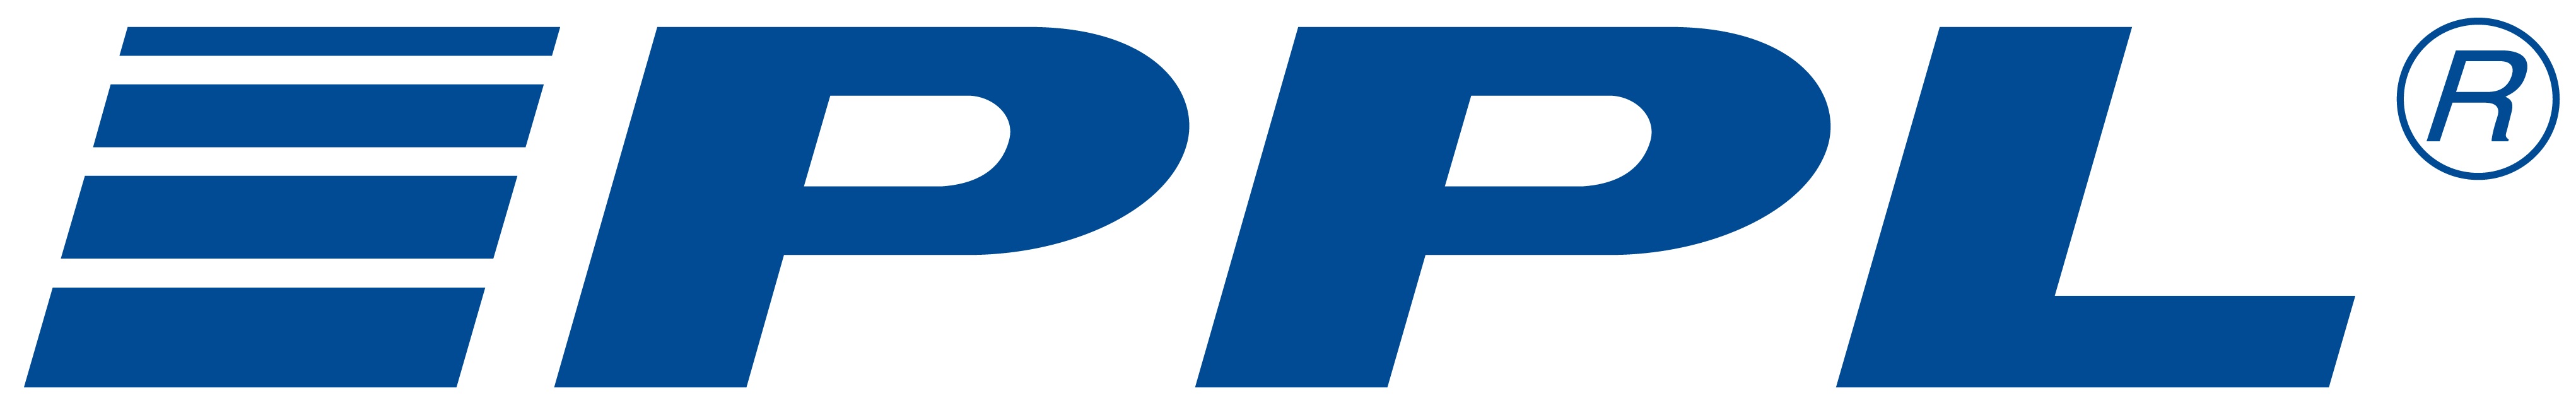 logo PPL světlé